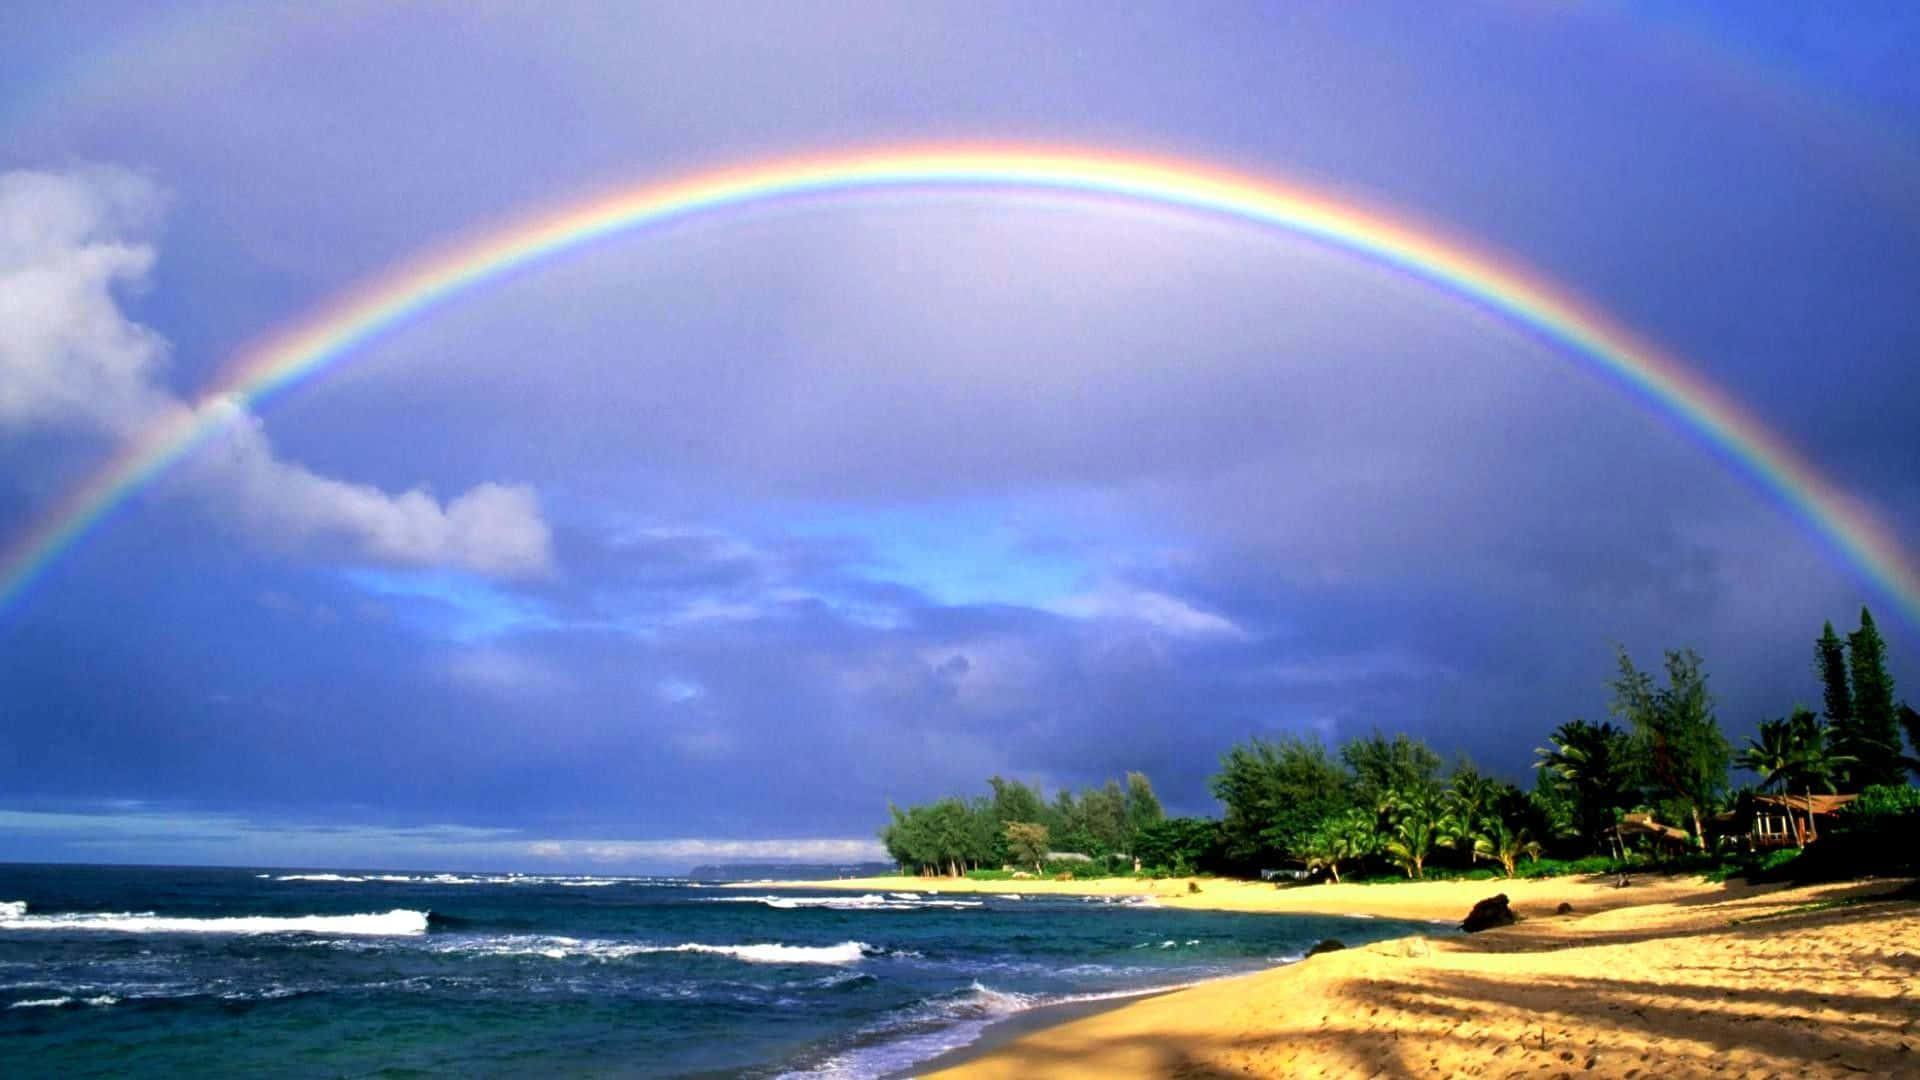 Hawaii Beach Rainbow In Sky Wallpaper